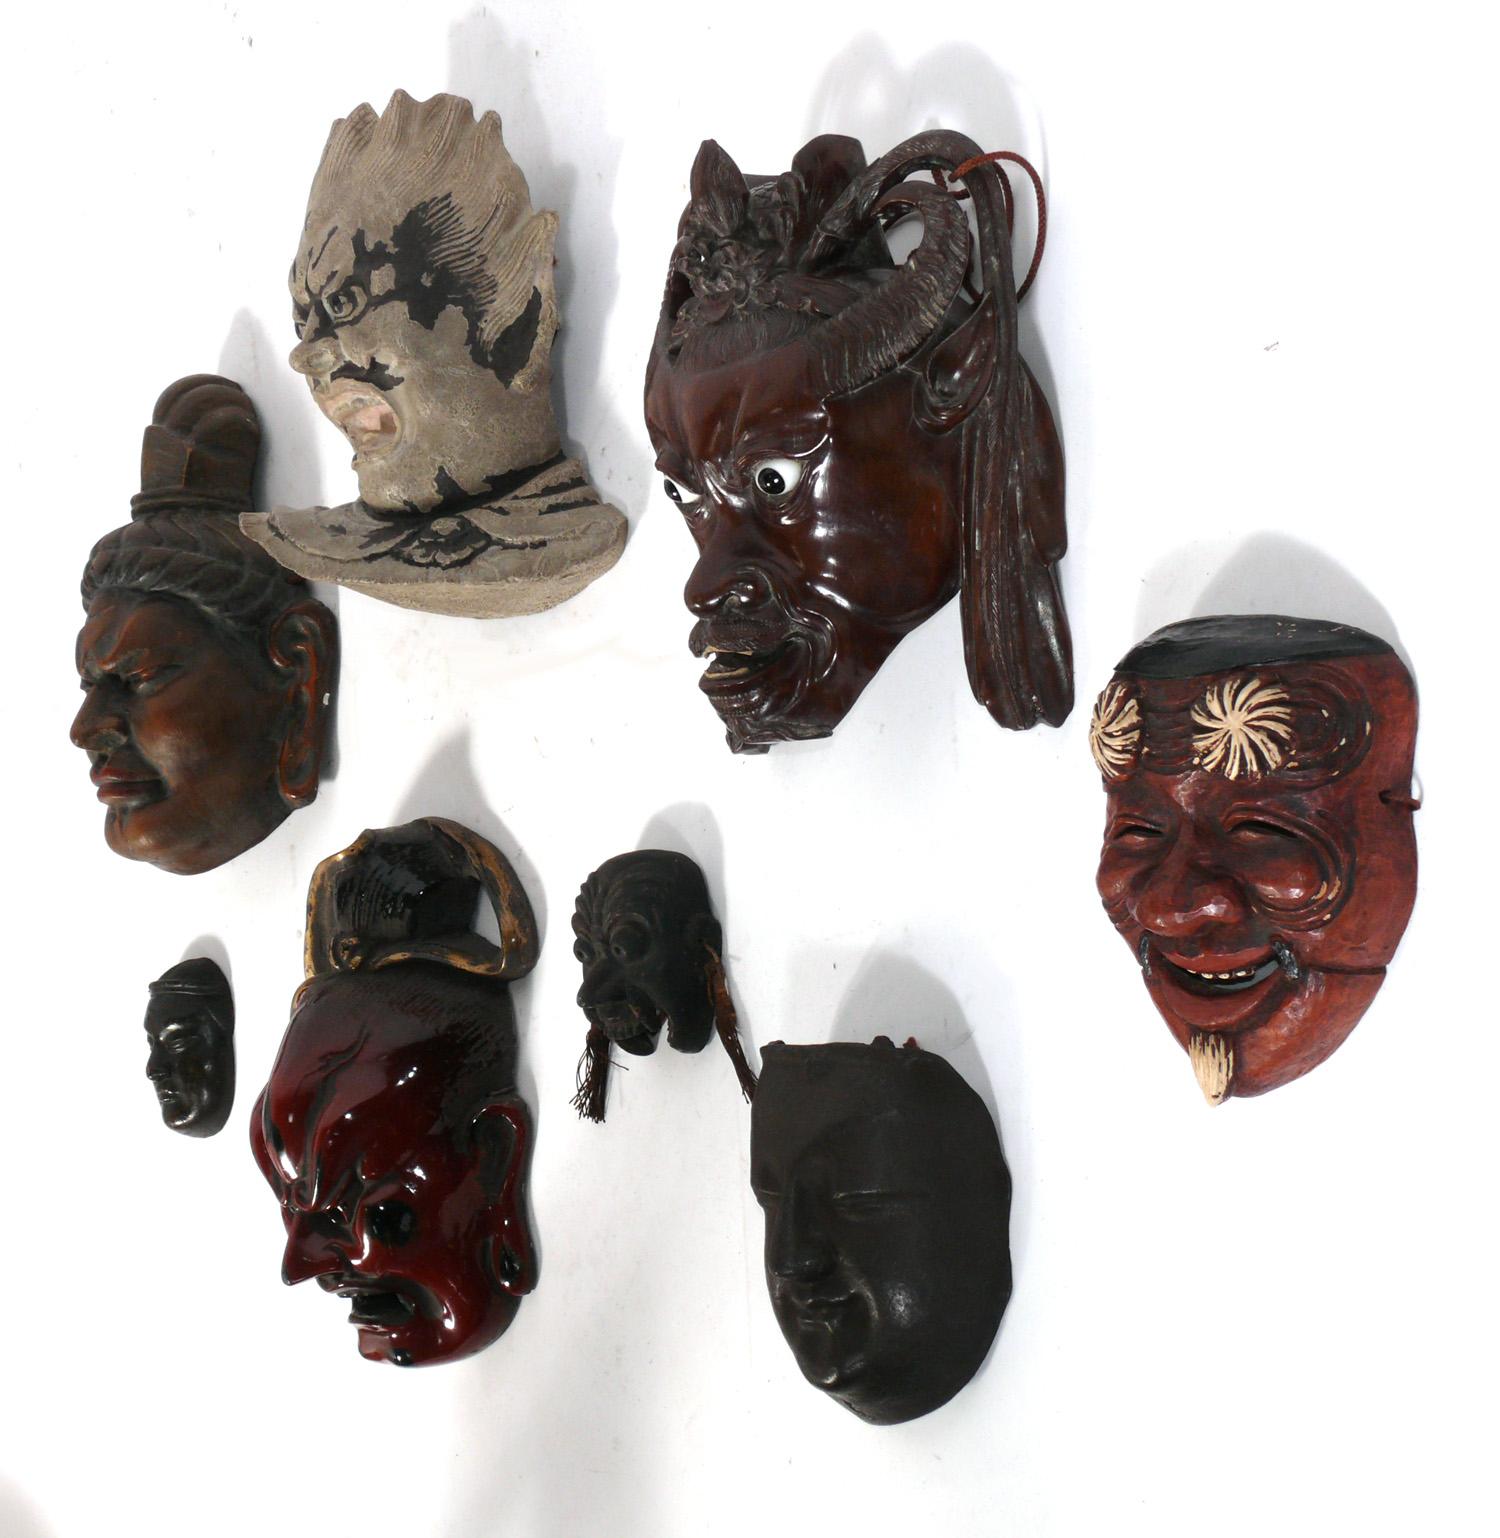 Collection de huit masques japonais et chinois, datant des années 1950 ou avant. Elles ont été récemment achetées dans la succession à Manhattan d'un Japonais qui a voyagé en Asie dans les années 1940-1970 pour acheter des antiquités. Ils conservent